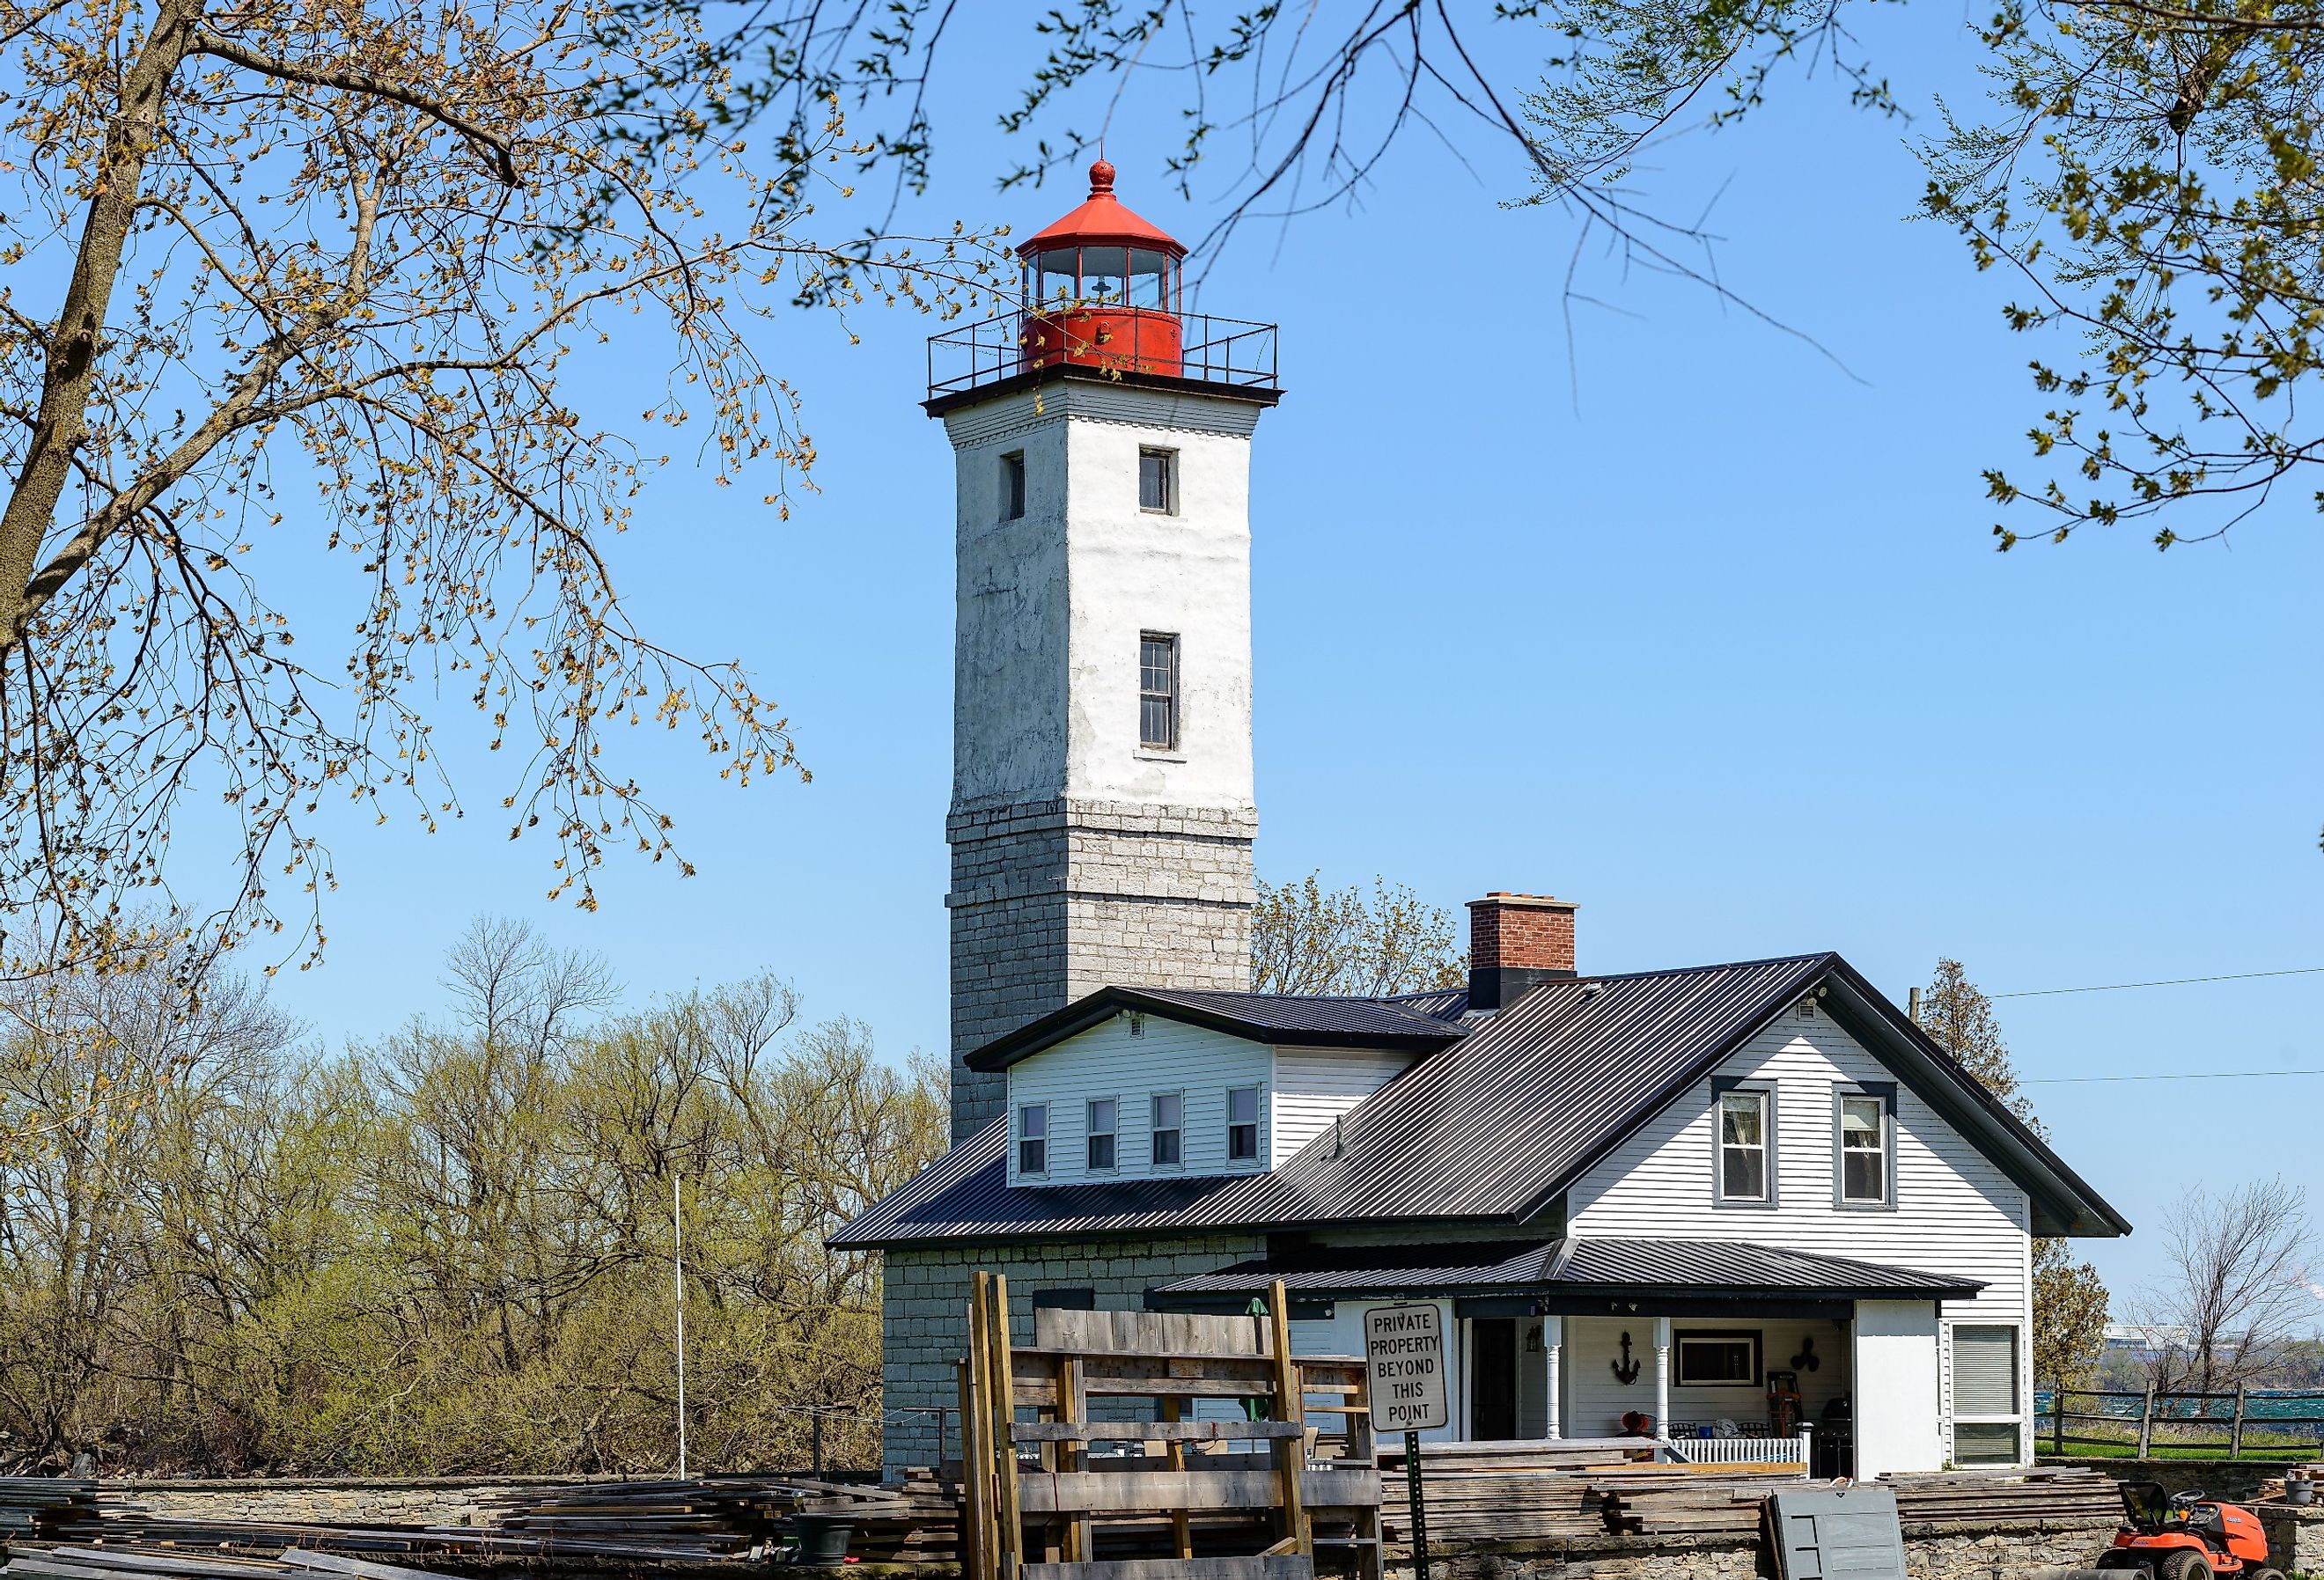 Ogdensburg Lighthouse on the St. Lawrence Seaway. Image credit Michelangelo DeSantis via Shutterstock.com